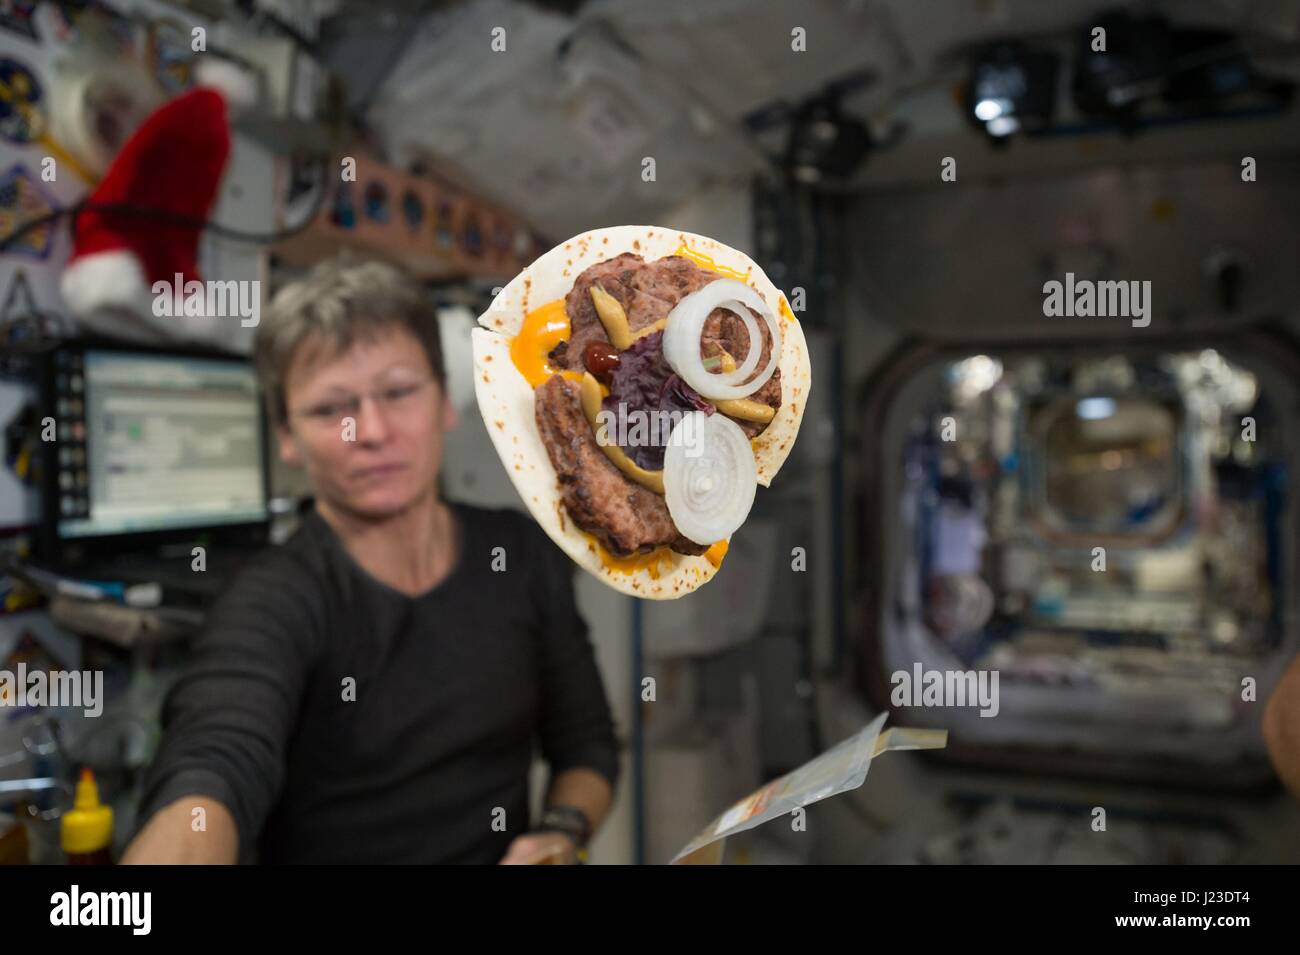 NASA-Expedition 50 erstklassige Besatzung Astronaut Peggy Whitson in der internationalen Raumstation ISS arbeitet, während ein Cheeseburger in einer Tortilla eingewickelt schwebt vor ihrem 24. Dezember 2016 in der Erdumlaufbahn.    (Foto von der NASA über Planetpix) Stockfoto